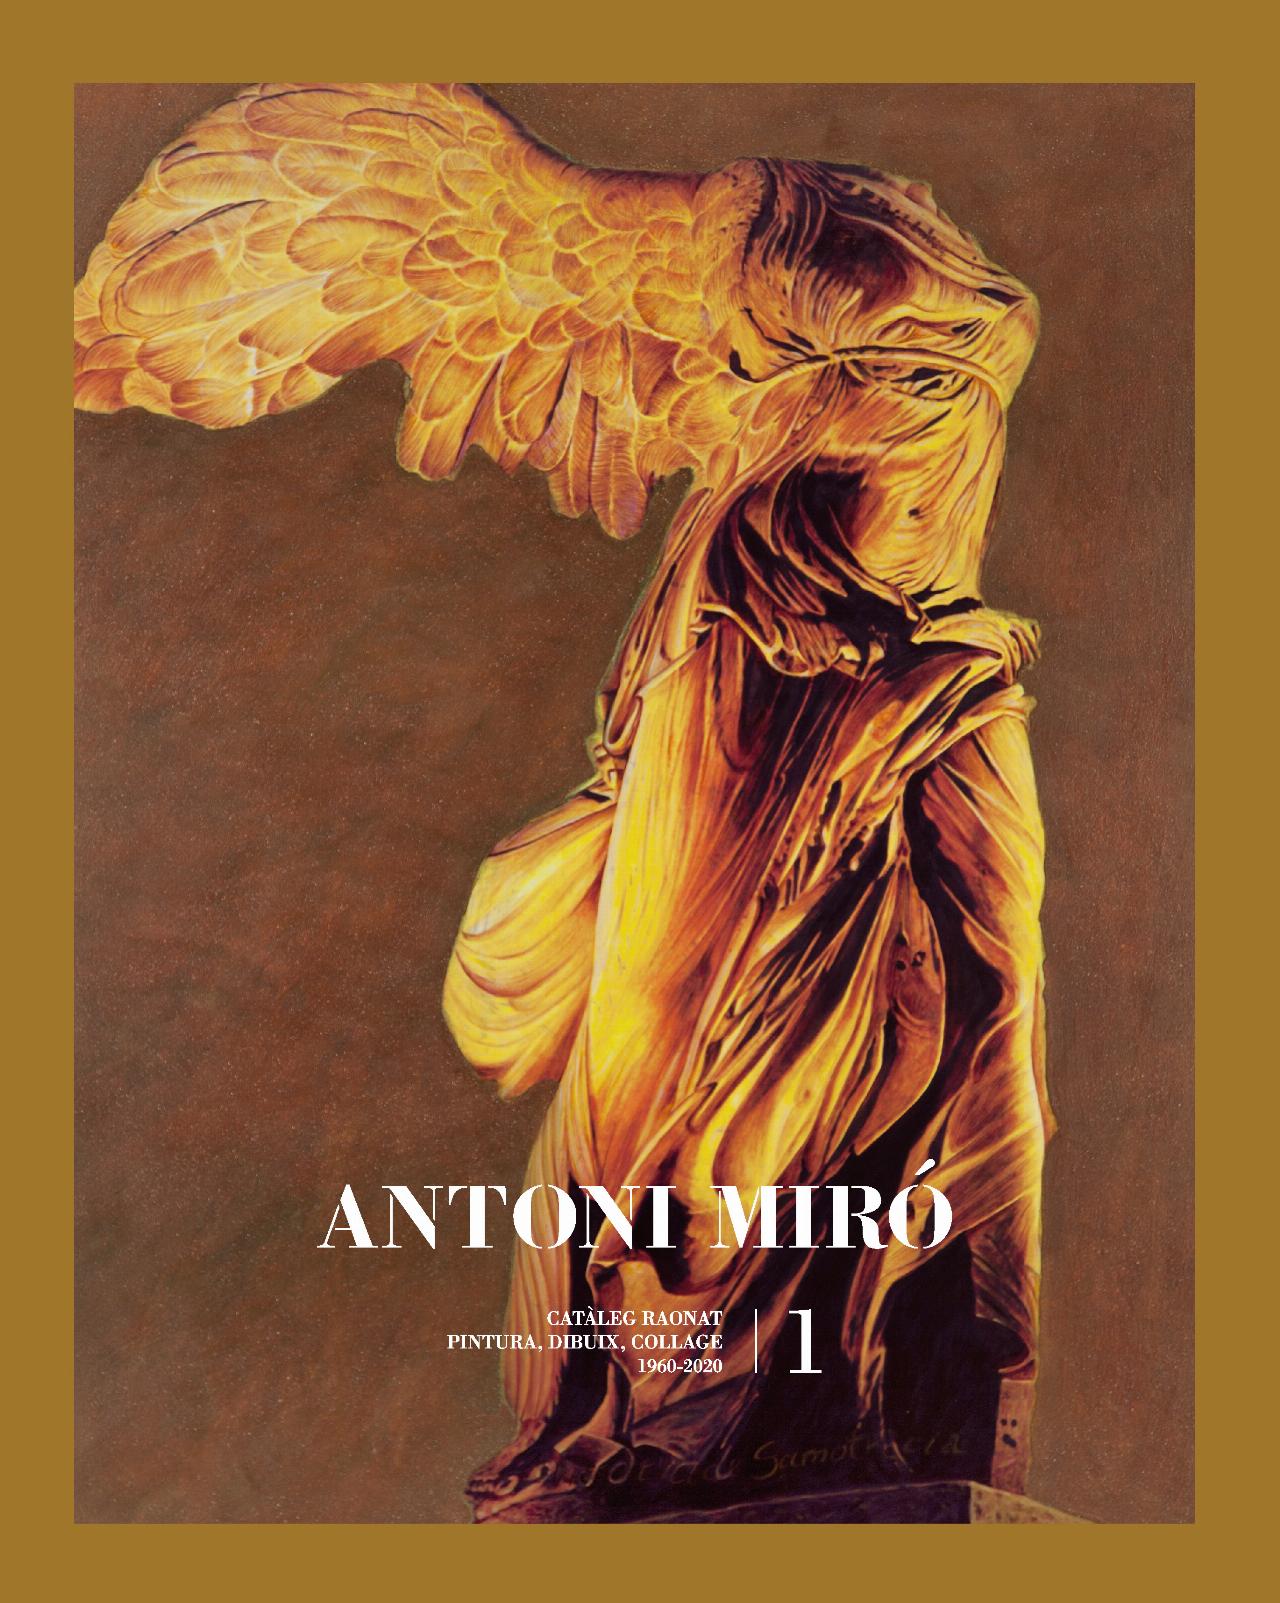 Imagen de portada del libro Antoni Miró